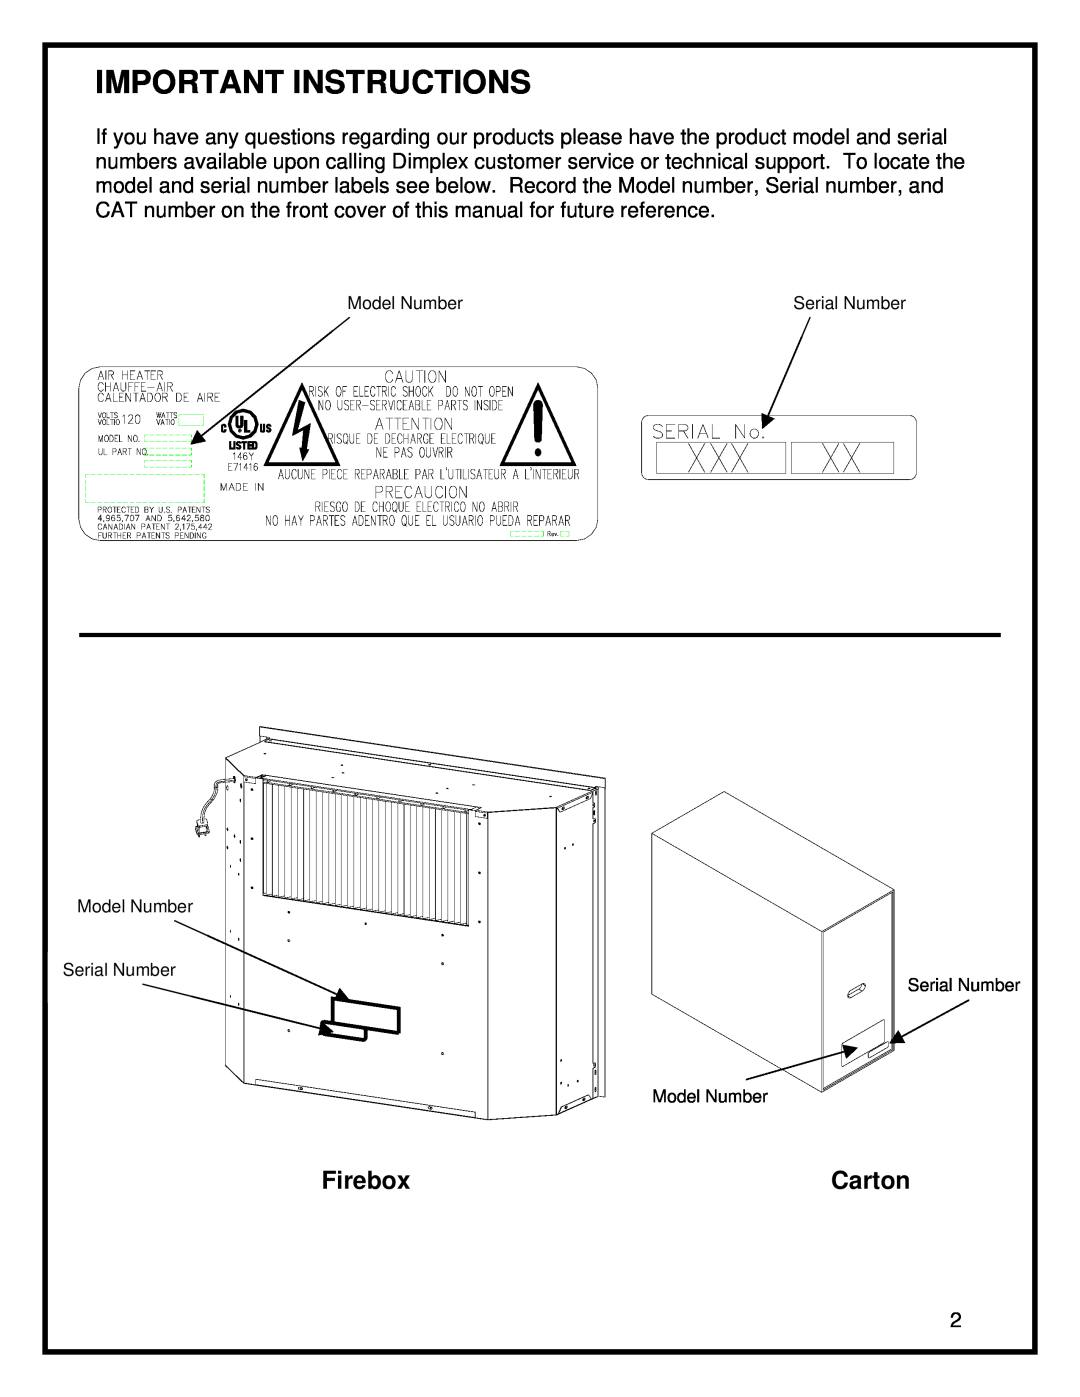 Dimplex DF3015 manual Important Instructions, Firebox, Carton 